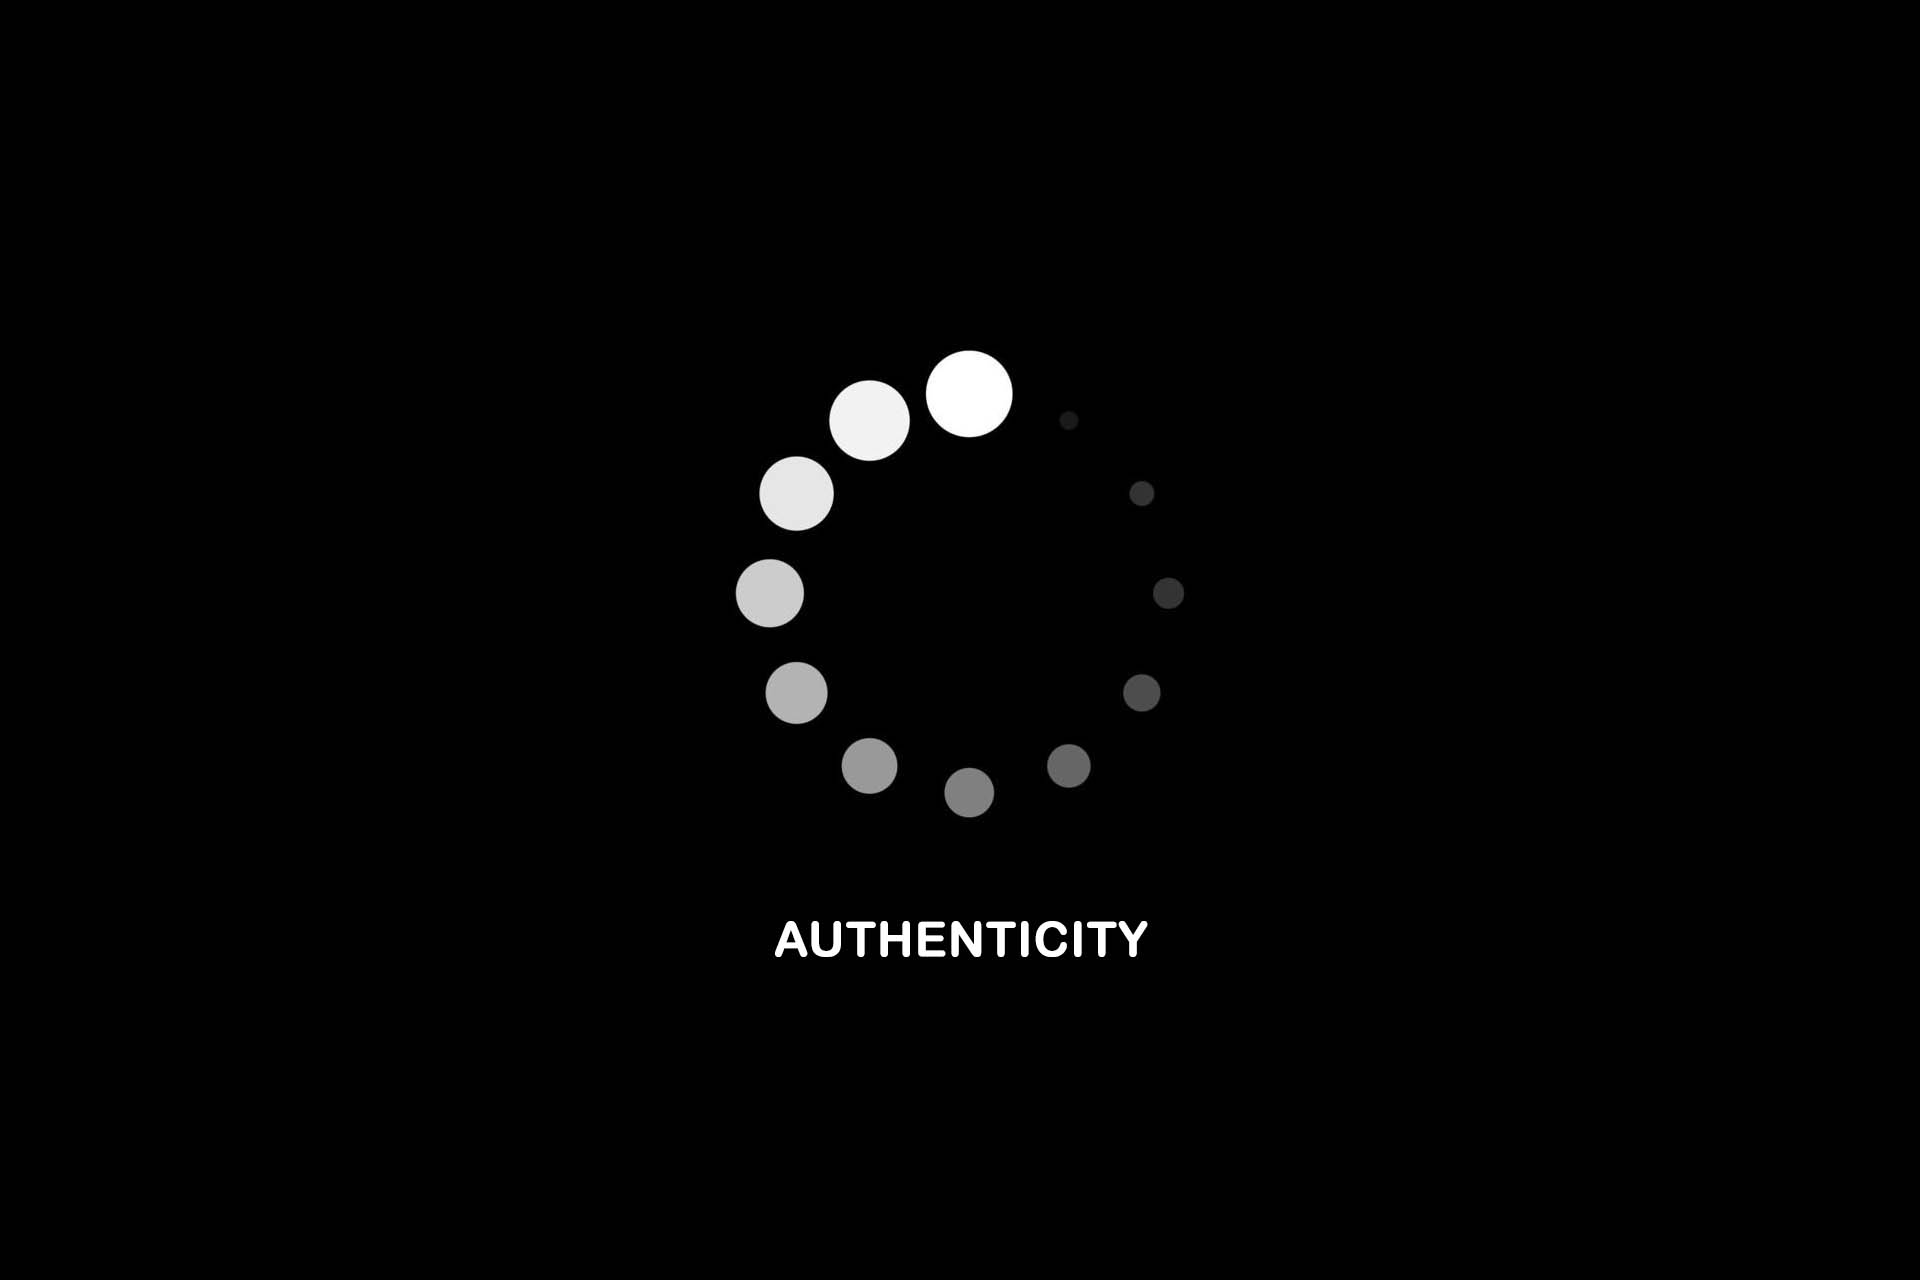 t2informatik Blog: The demand for authenticity